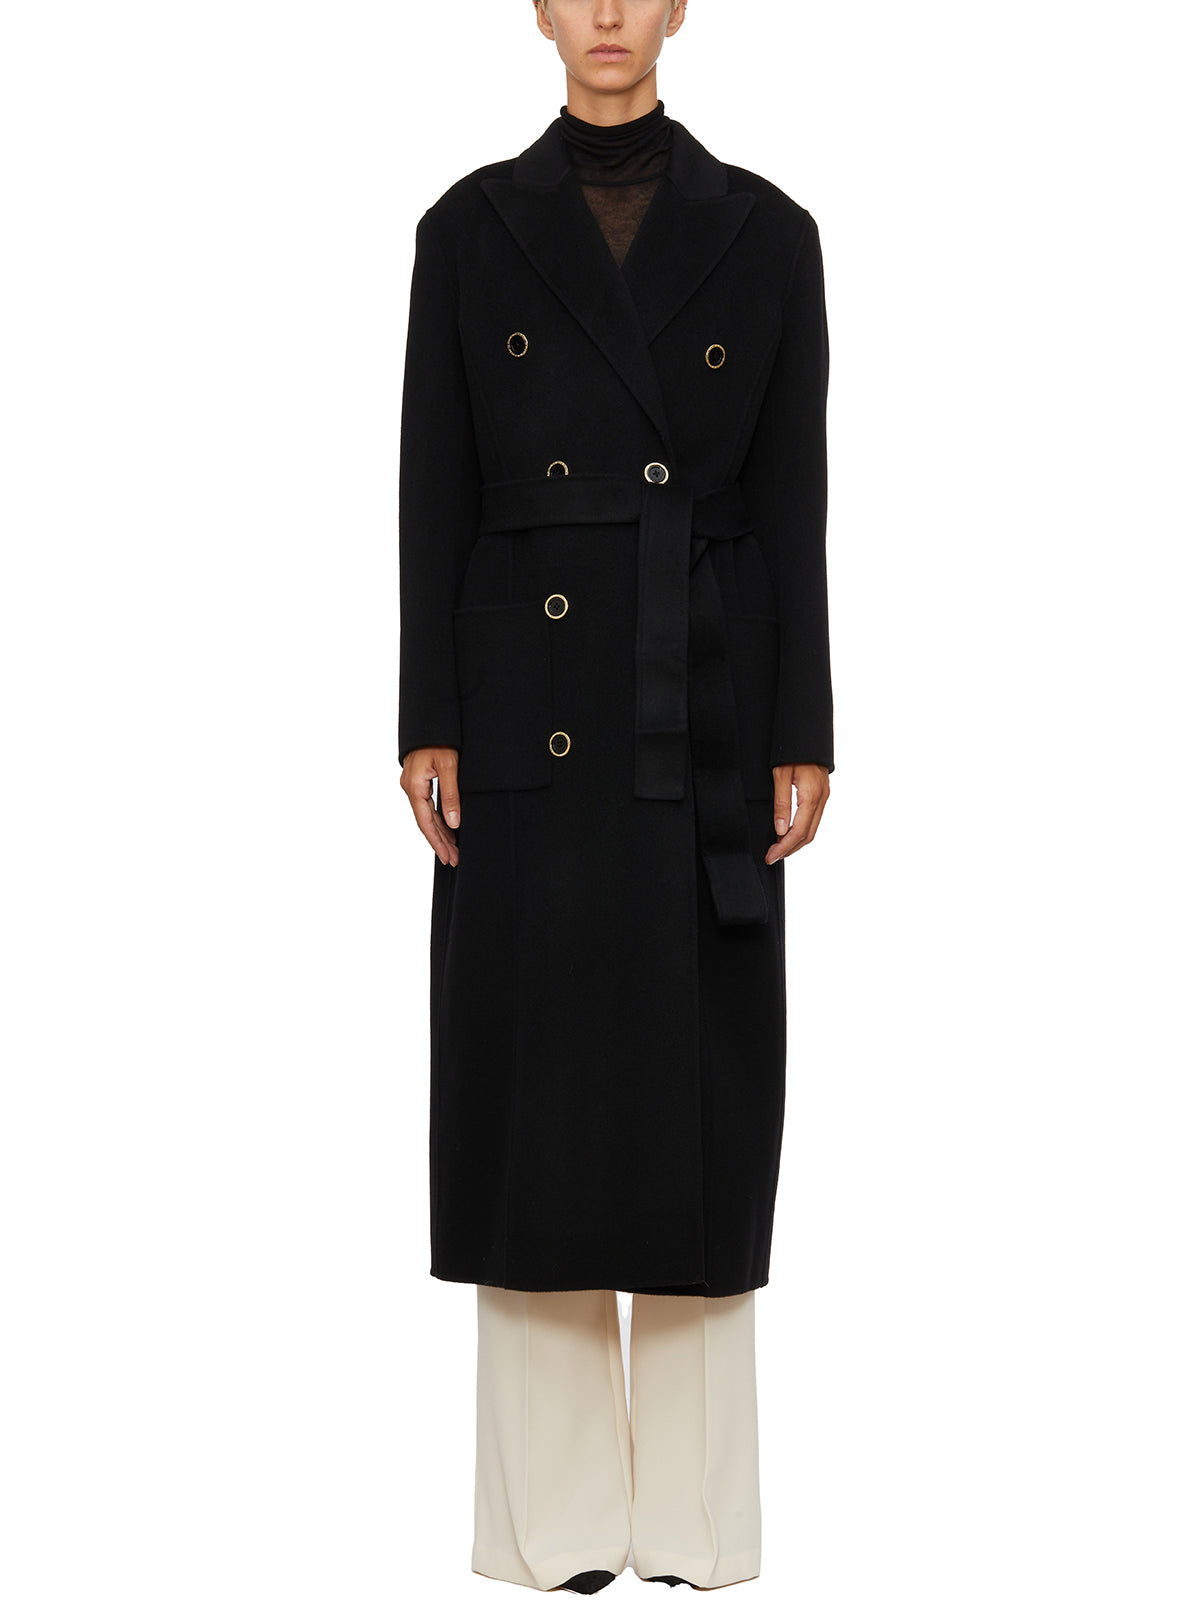 Áo khoác len đen Doppopetto cho phụ nữ - Bộ sưu tập FW23